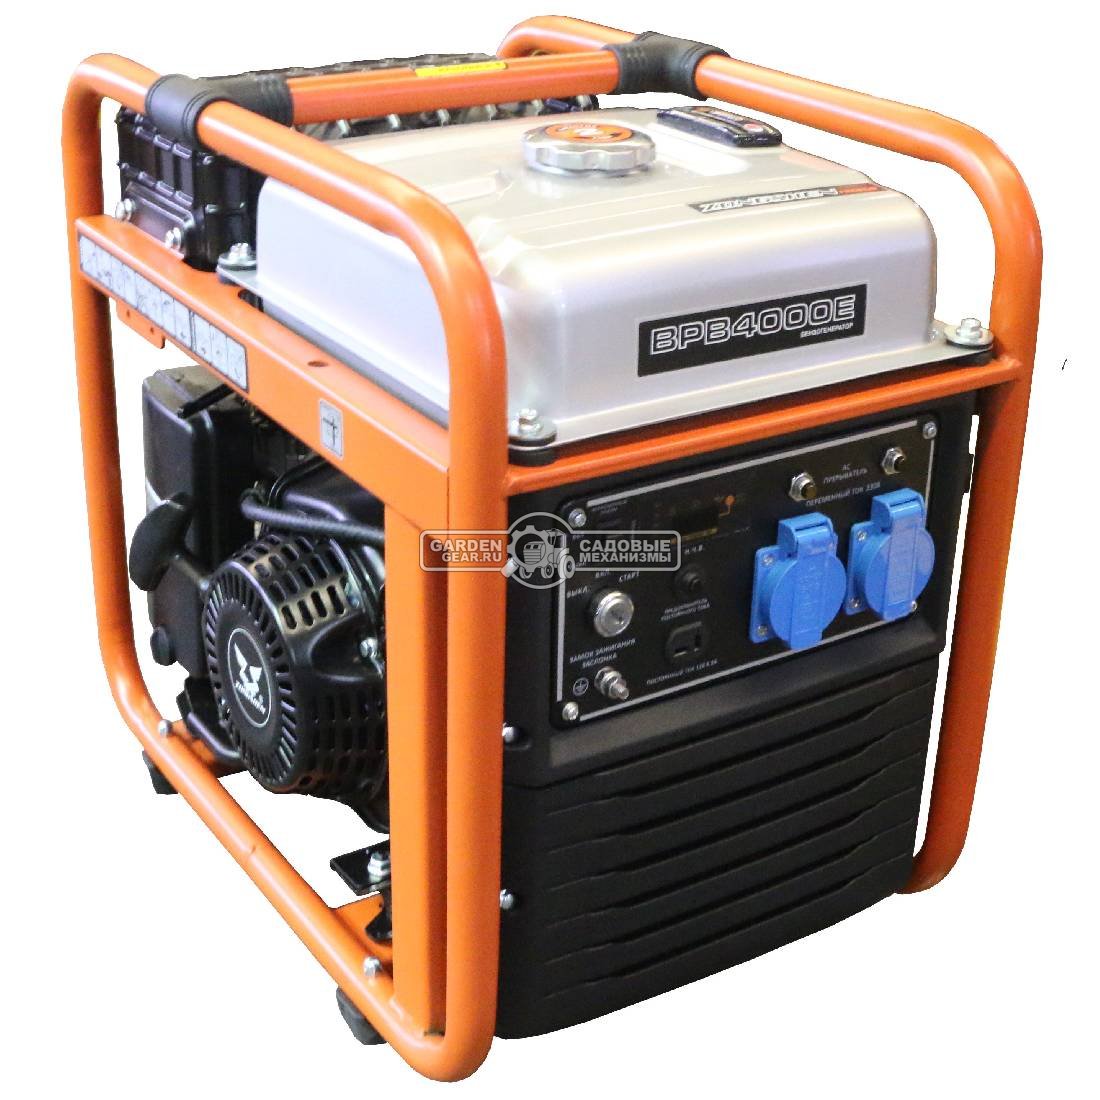 Бензиновый генератор инверторный Zongshen BPB 4000 E с электрозапуском (PRC, 224 см3, 3.8/3.5 кВт, 11 л, 34 кг)